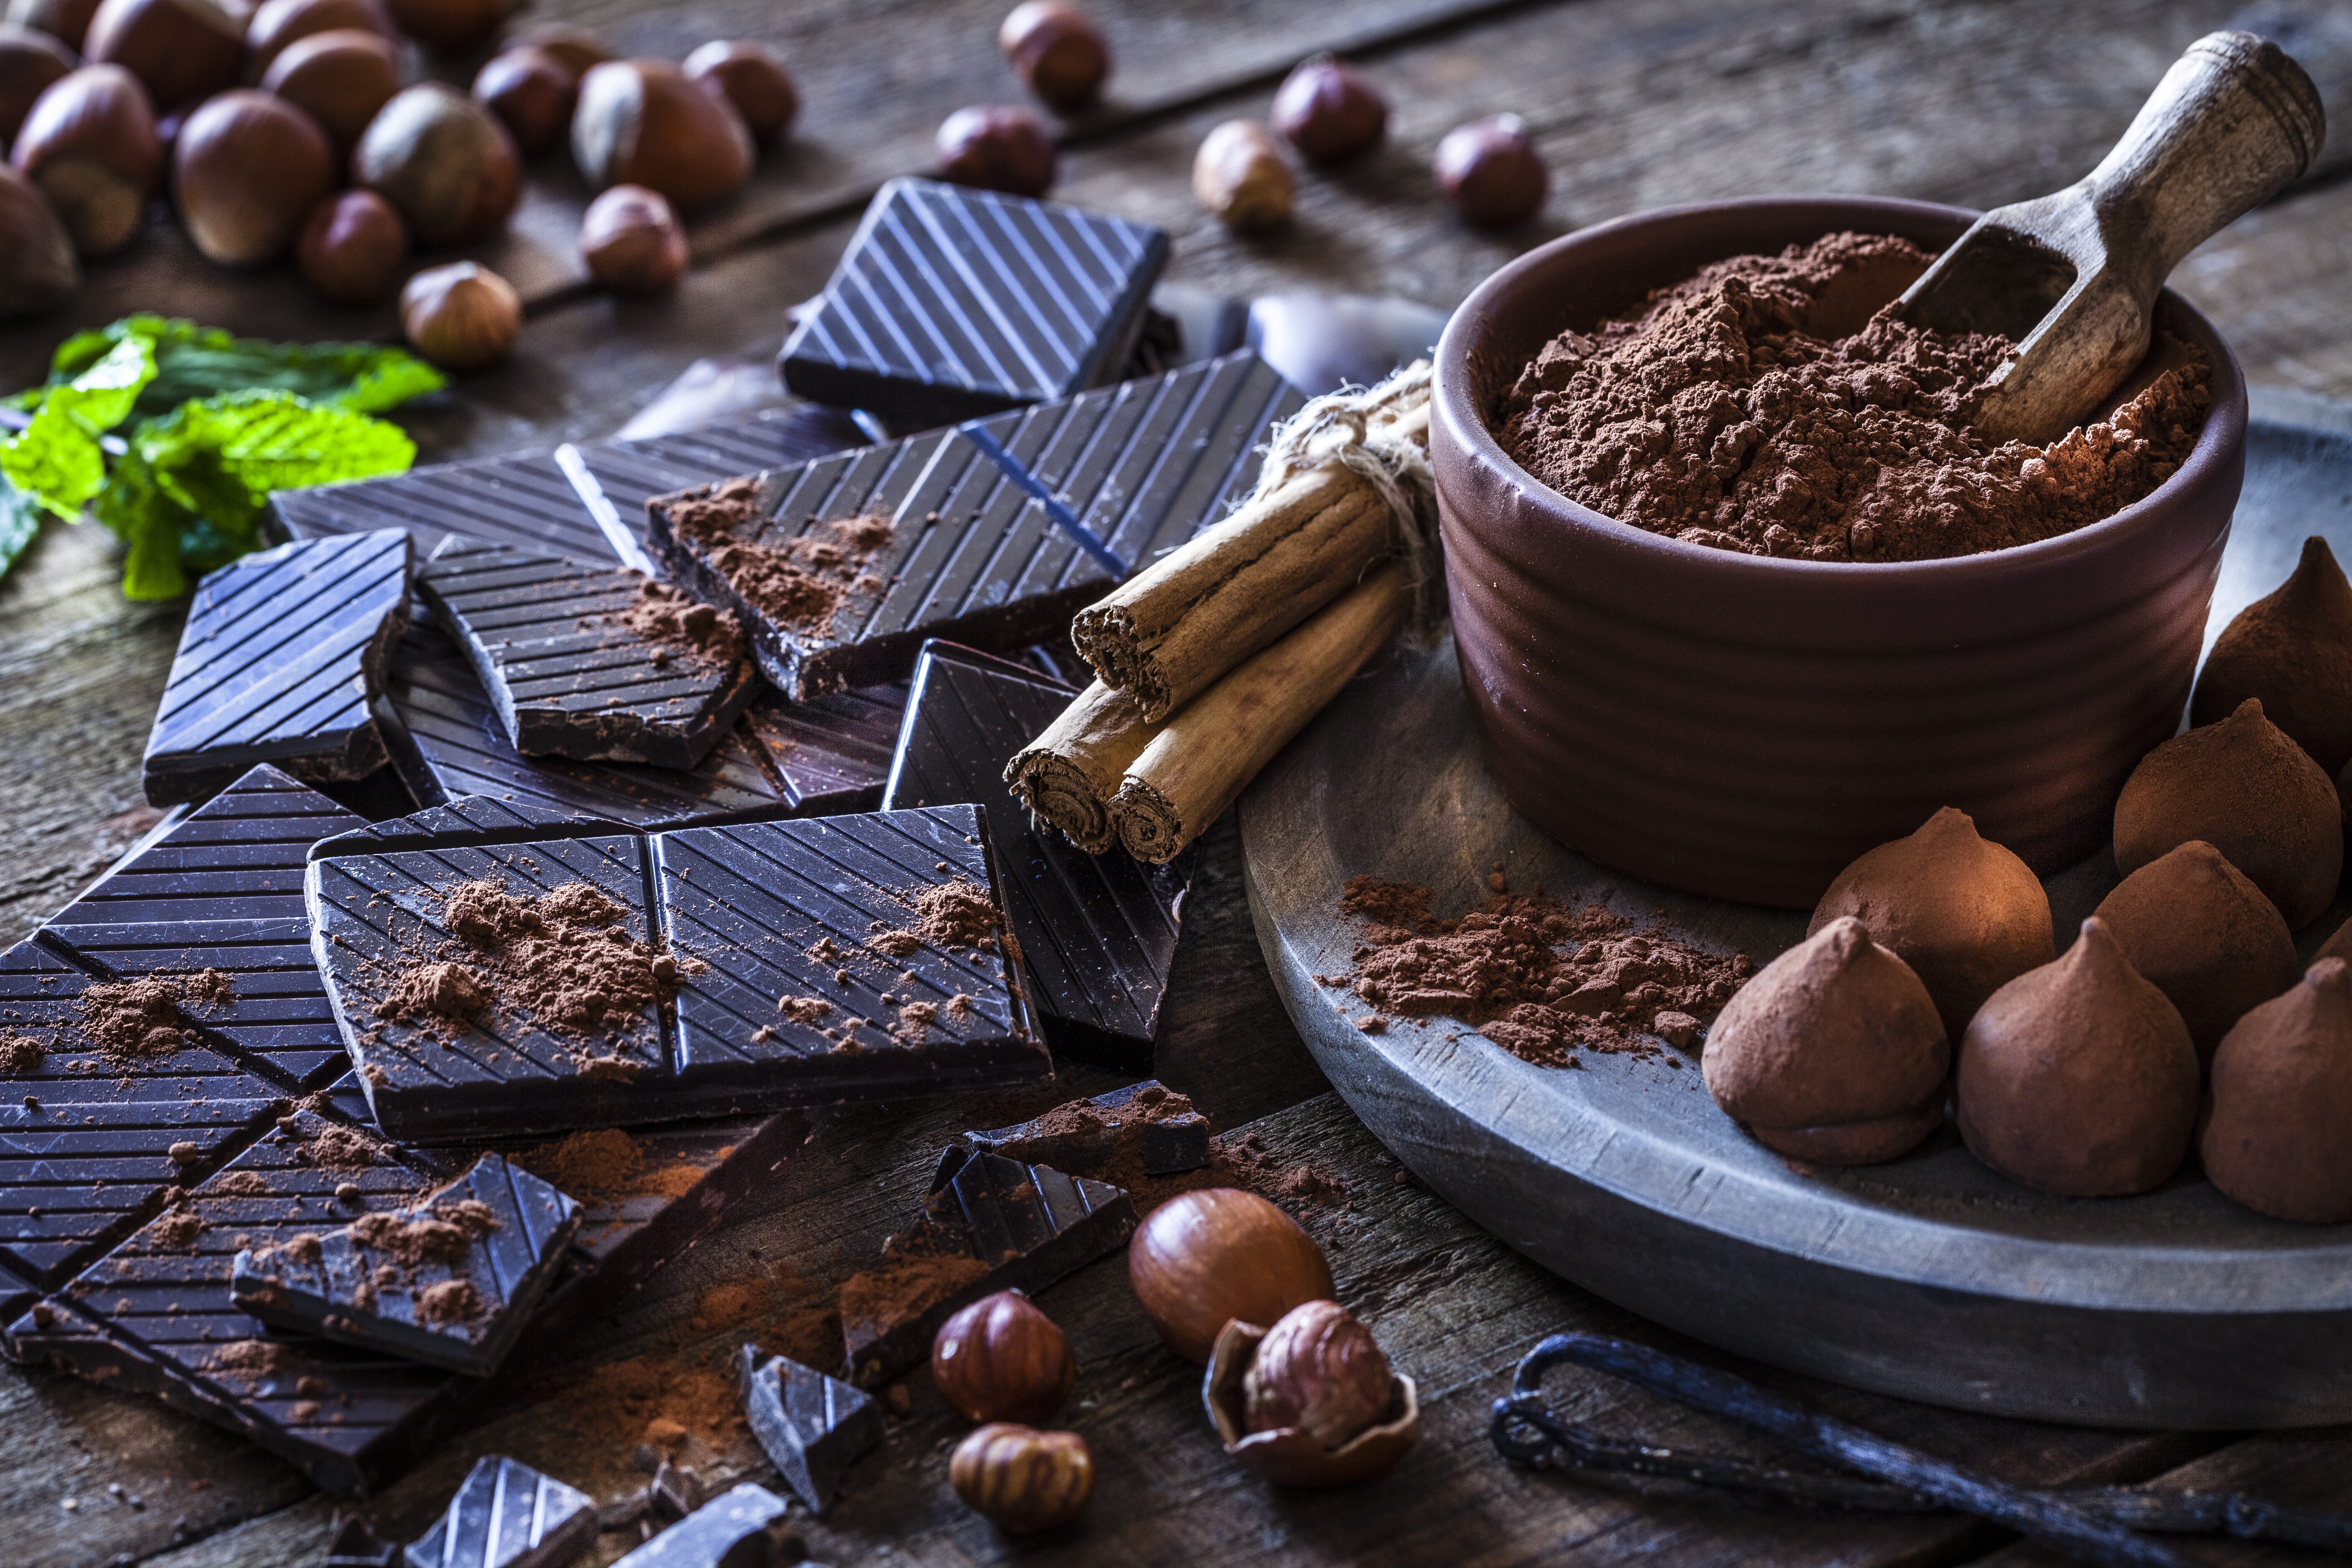 <p><strong>Понижава холестерола</strong></p>

<p>Какаовите зърна, от които се прави шоколада, имат също противовъзпалителни свойства, които помагат срещу увреждания на тъканите. Това е и причината някои лекари да го препоръчват за борба със сърдечно-съдовите заболявания.</p>

<p>Антиоксидантите, които шоколадът съдържа, могат да помогнат за понижаване на LDL холестерола - &bdquo;лошия&ldquo; тип, който води до натрупване на мазнини в артериите ви, като през цялото време поддържа HDL холестерола - &bdquo;добрия&ldquo; тип, който действа като &bdquo;чистач&ldquo; на допълнителния холестерол и &bdquo;измита&ldquo; натрупването му далеч от артериите и обратно към черния дроб.</p>